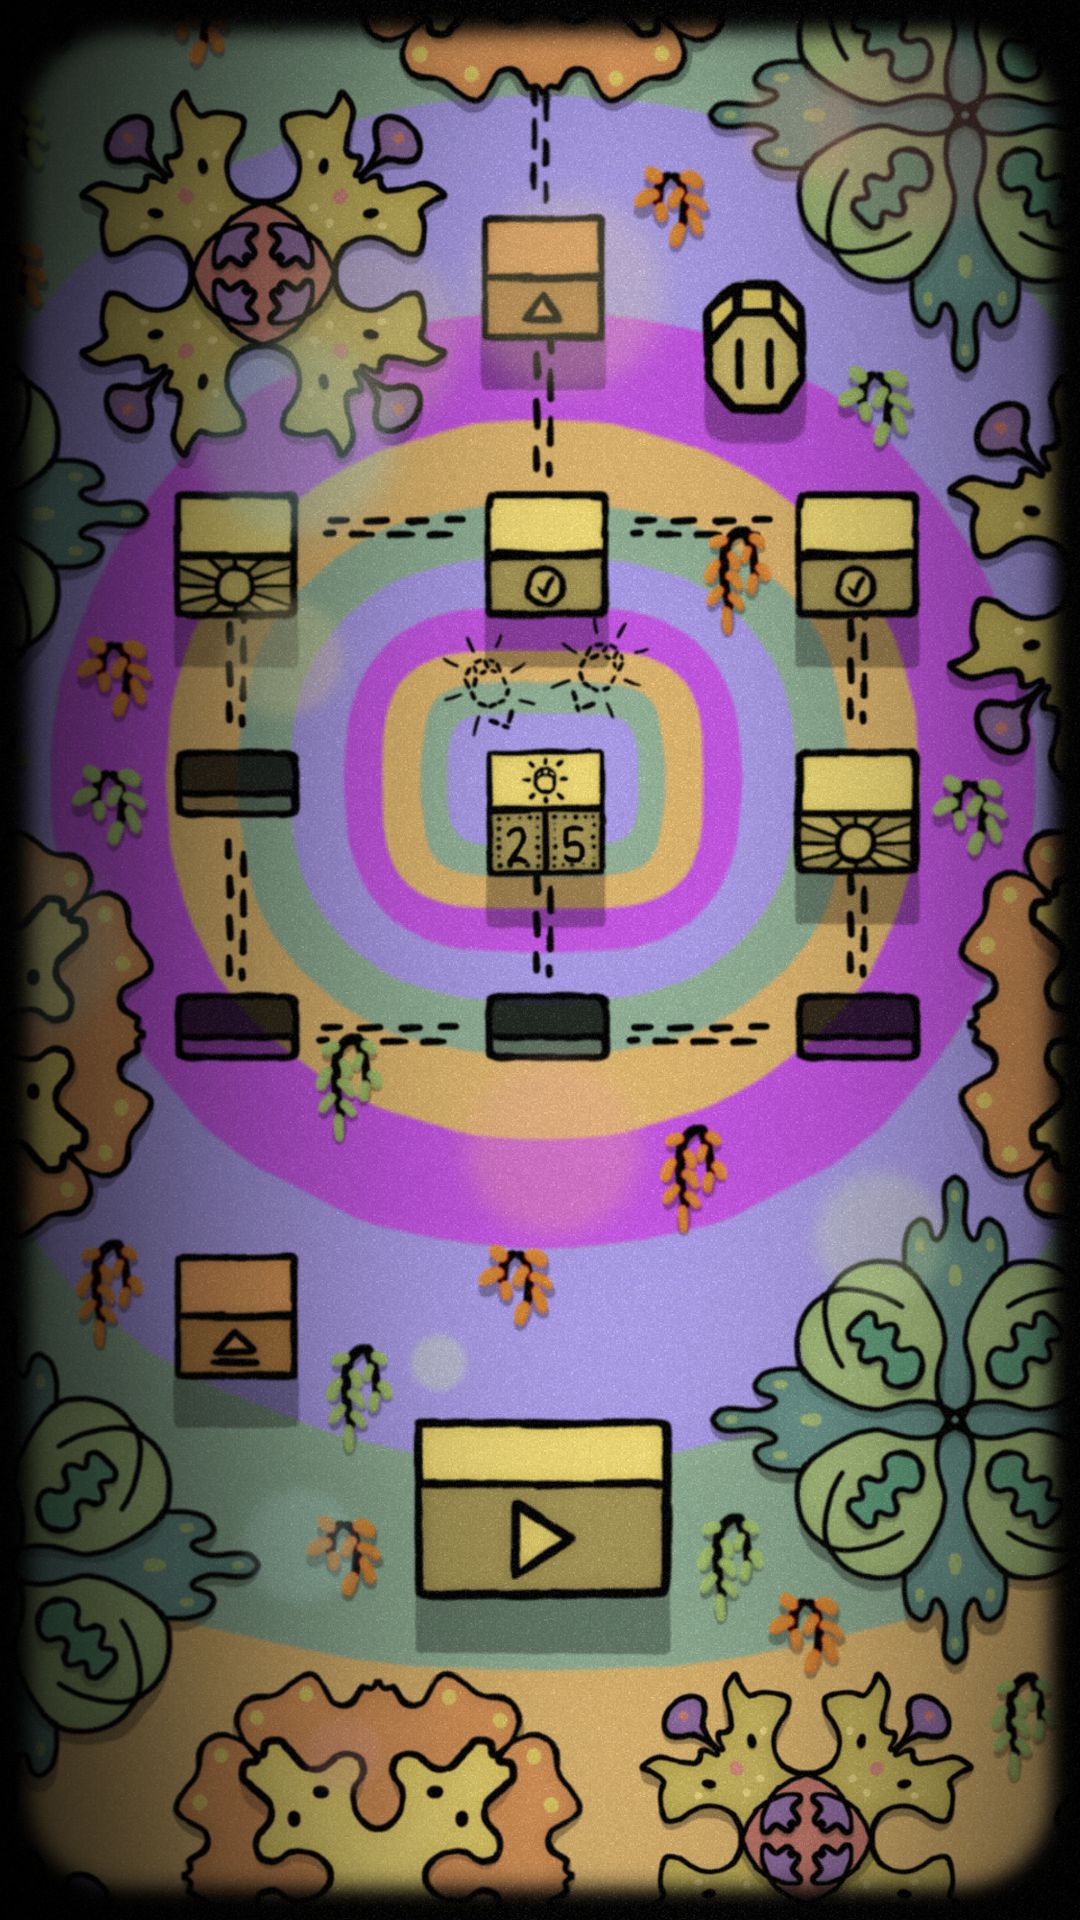 Psychofunk - Android game screenshots.